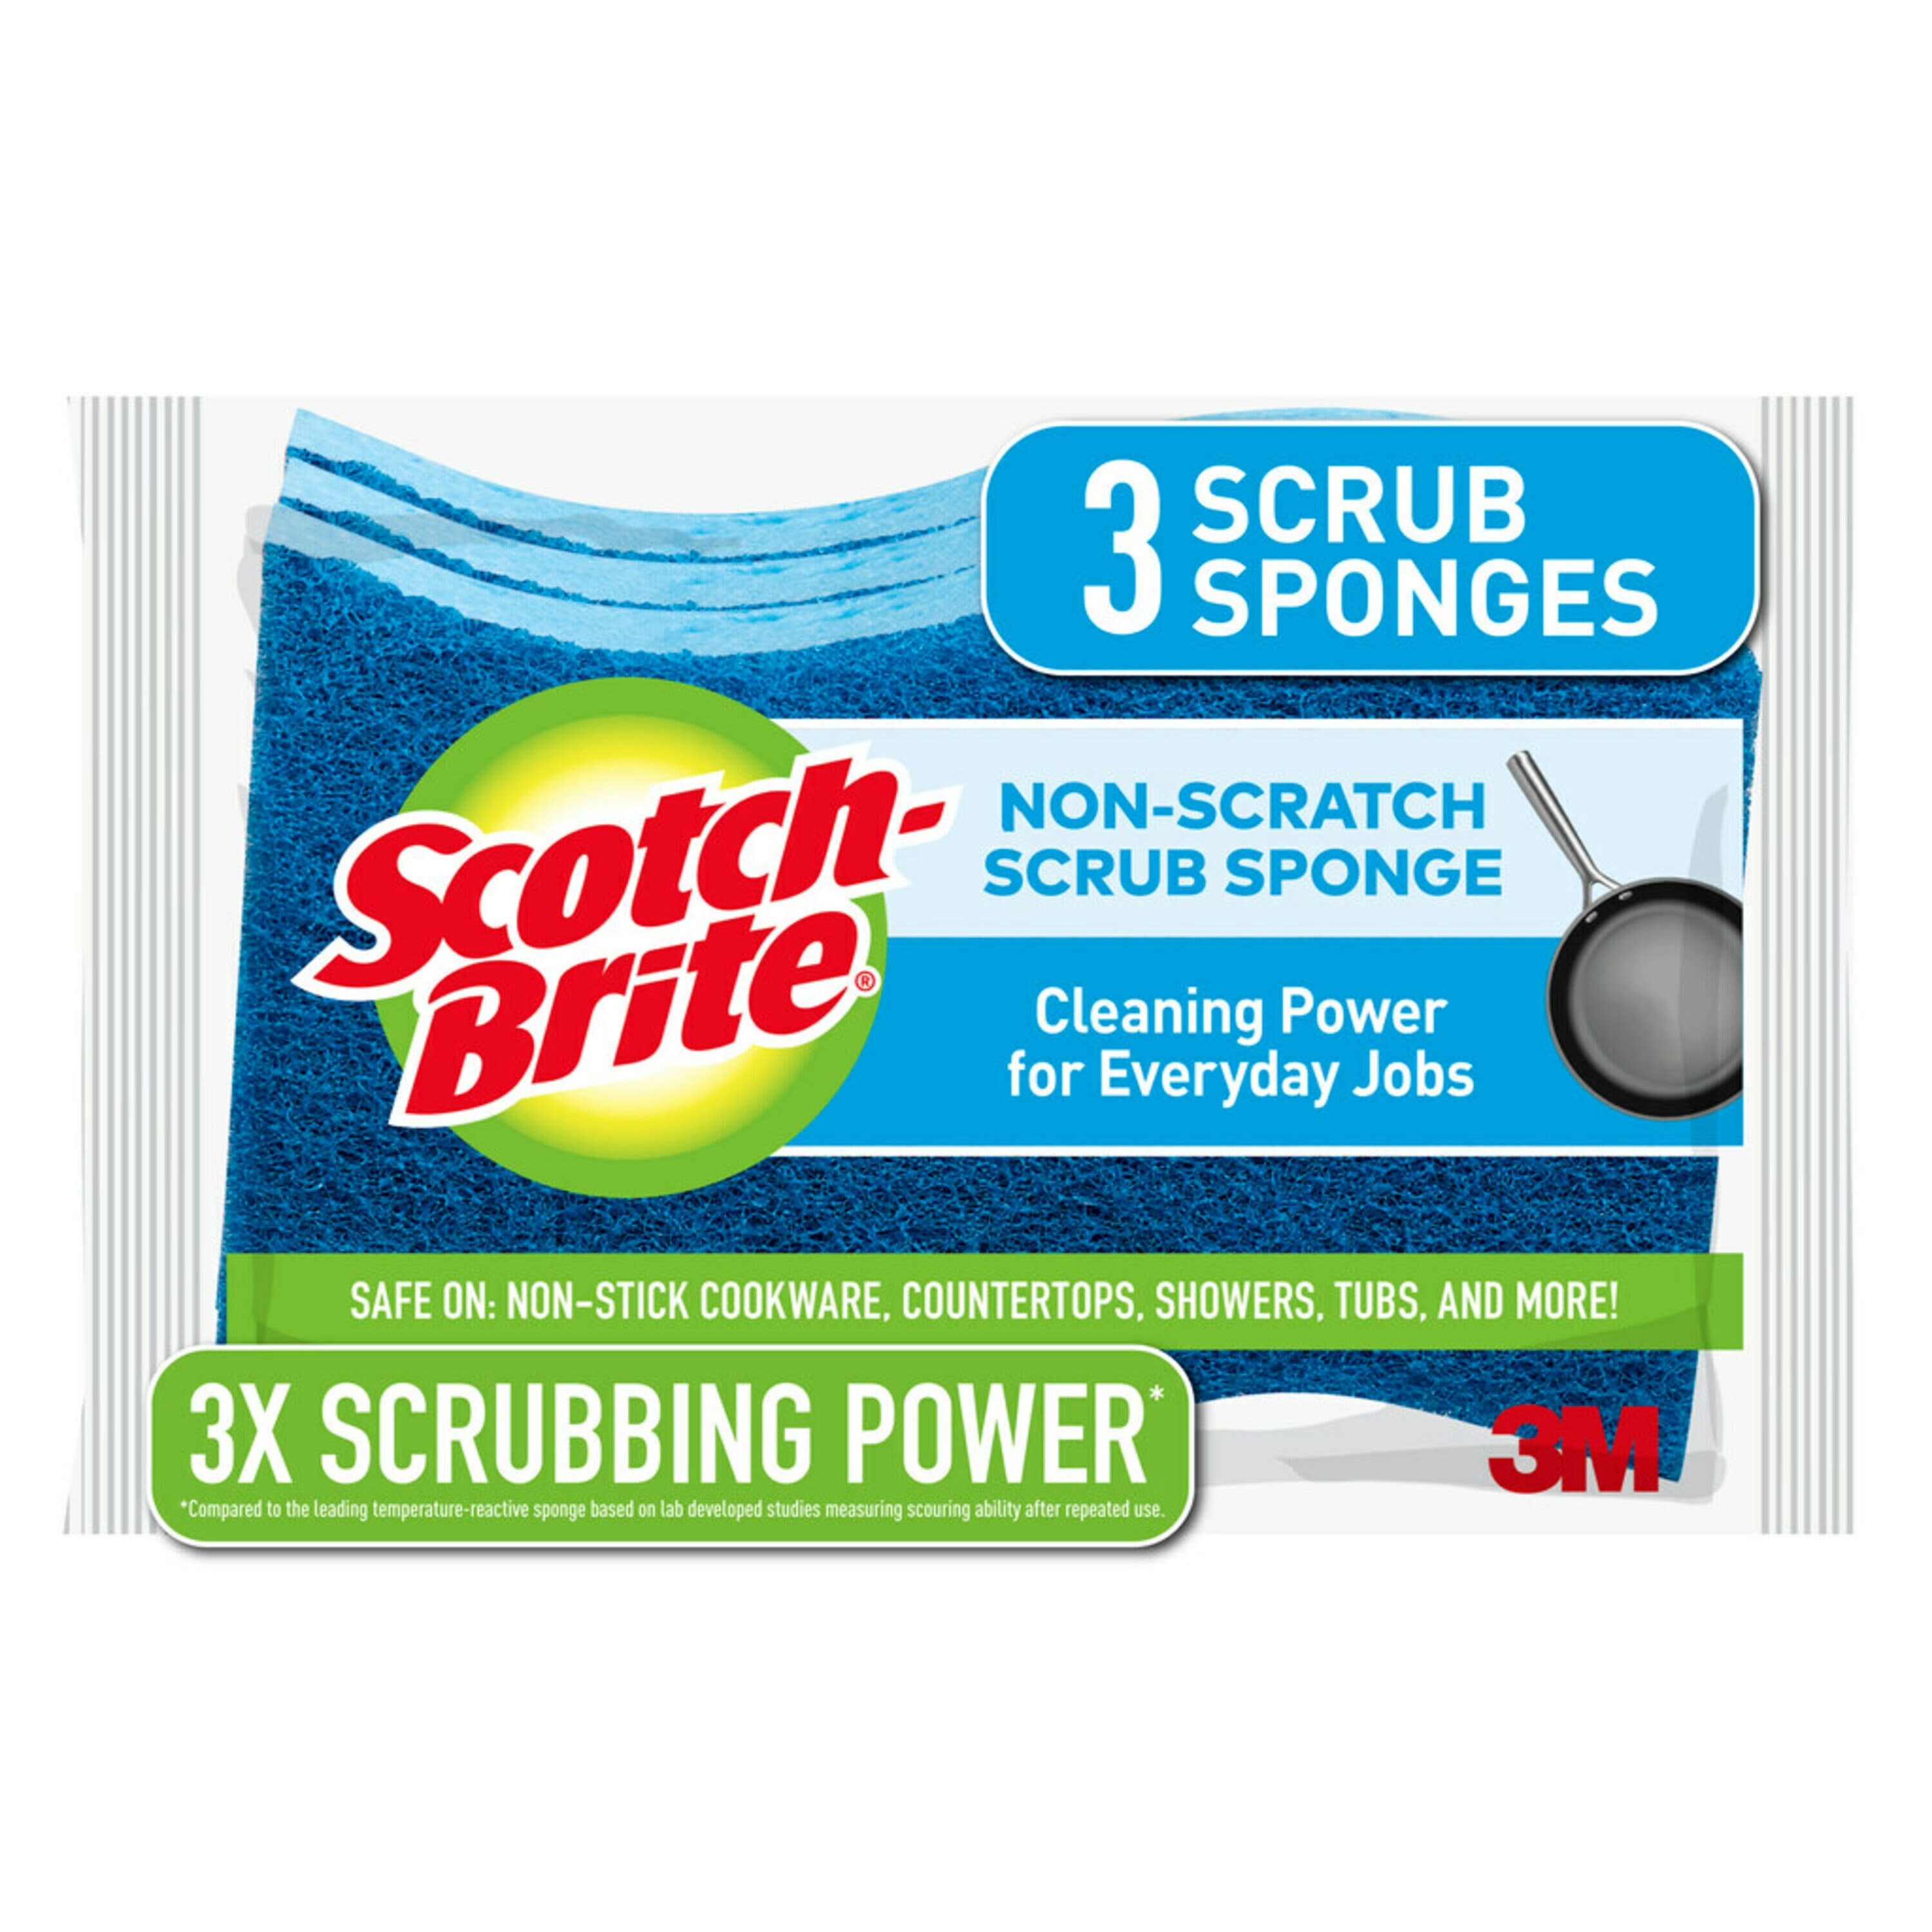 3 Scrub Sponges Scotch Brite Non-Scratch Scrub Sponges 